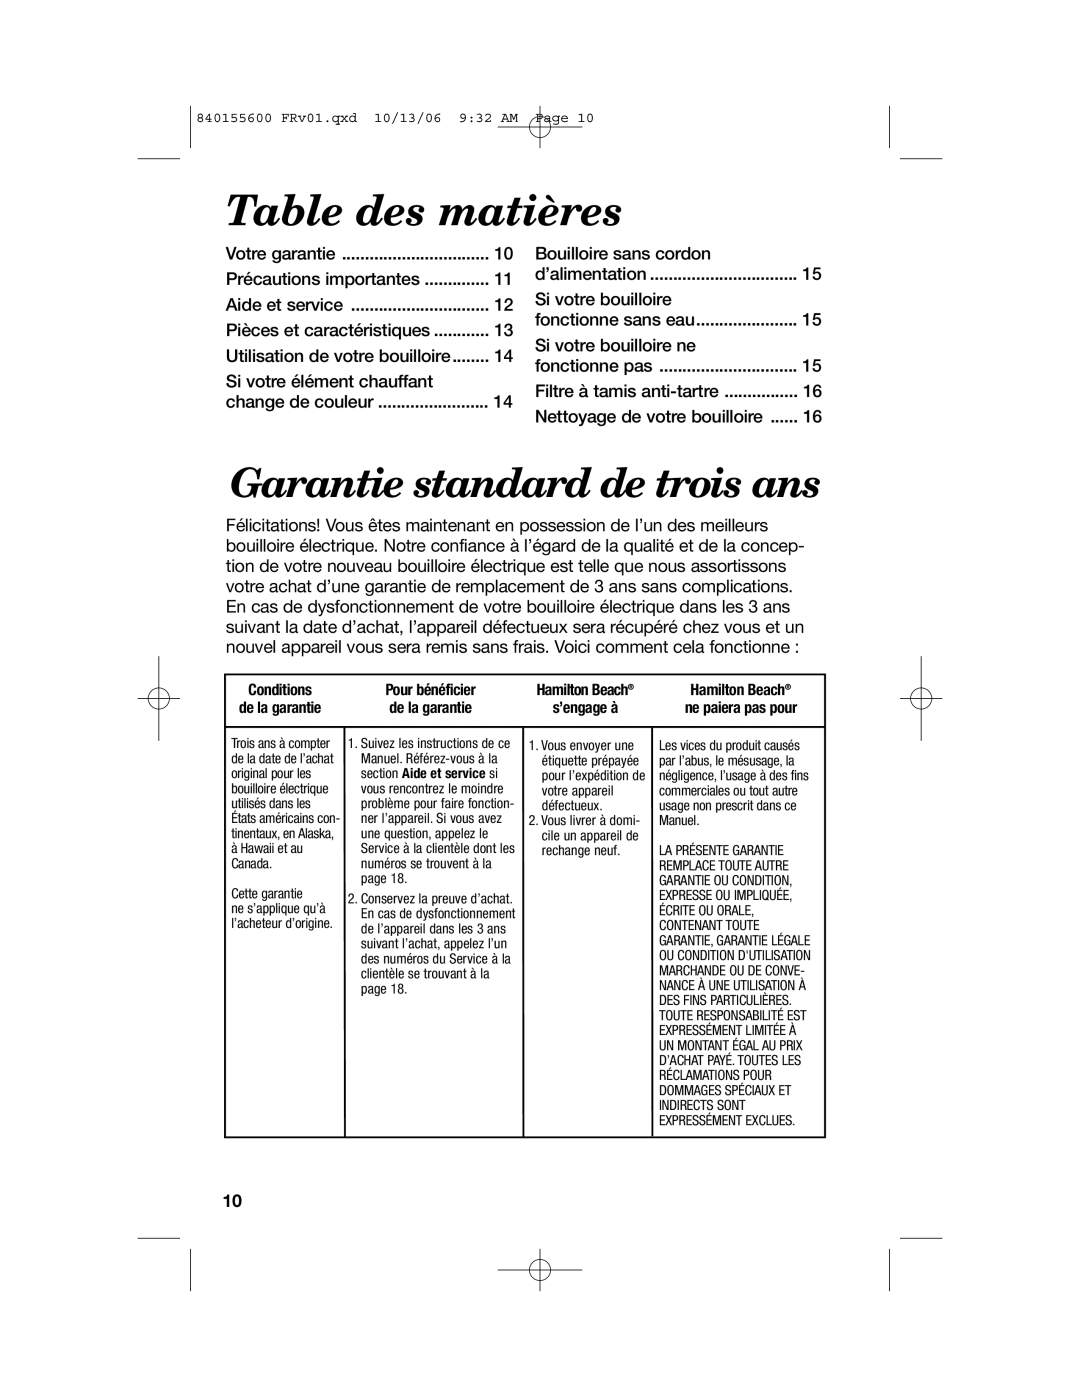 Hamilton Beach 40990 manual Table des matières, Garantie standard de trois ans 